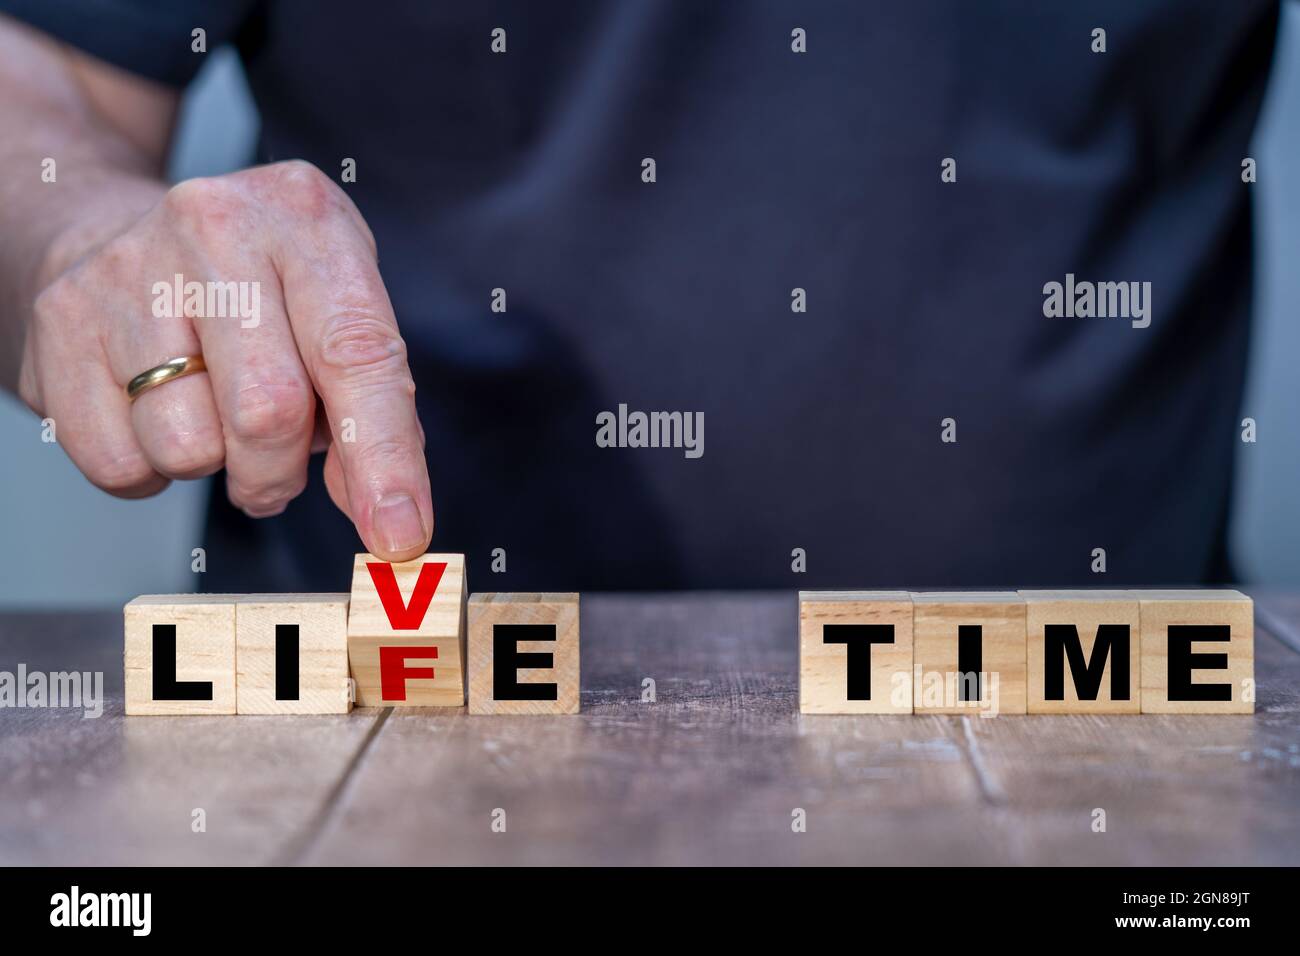 Holzwürfel Abstract in A Life oder Live Time Mans Hand dreht einen Holzblock und ändert die Worte Live to Life Stockfoto